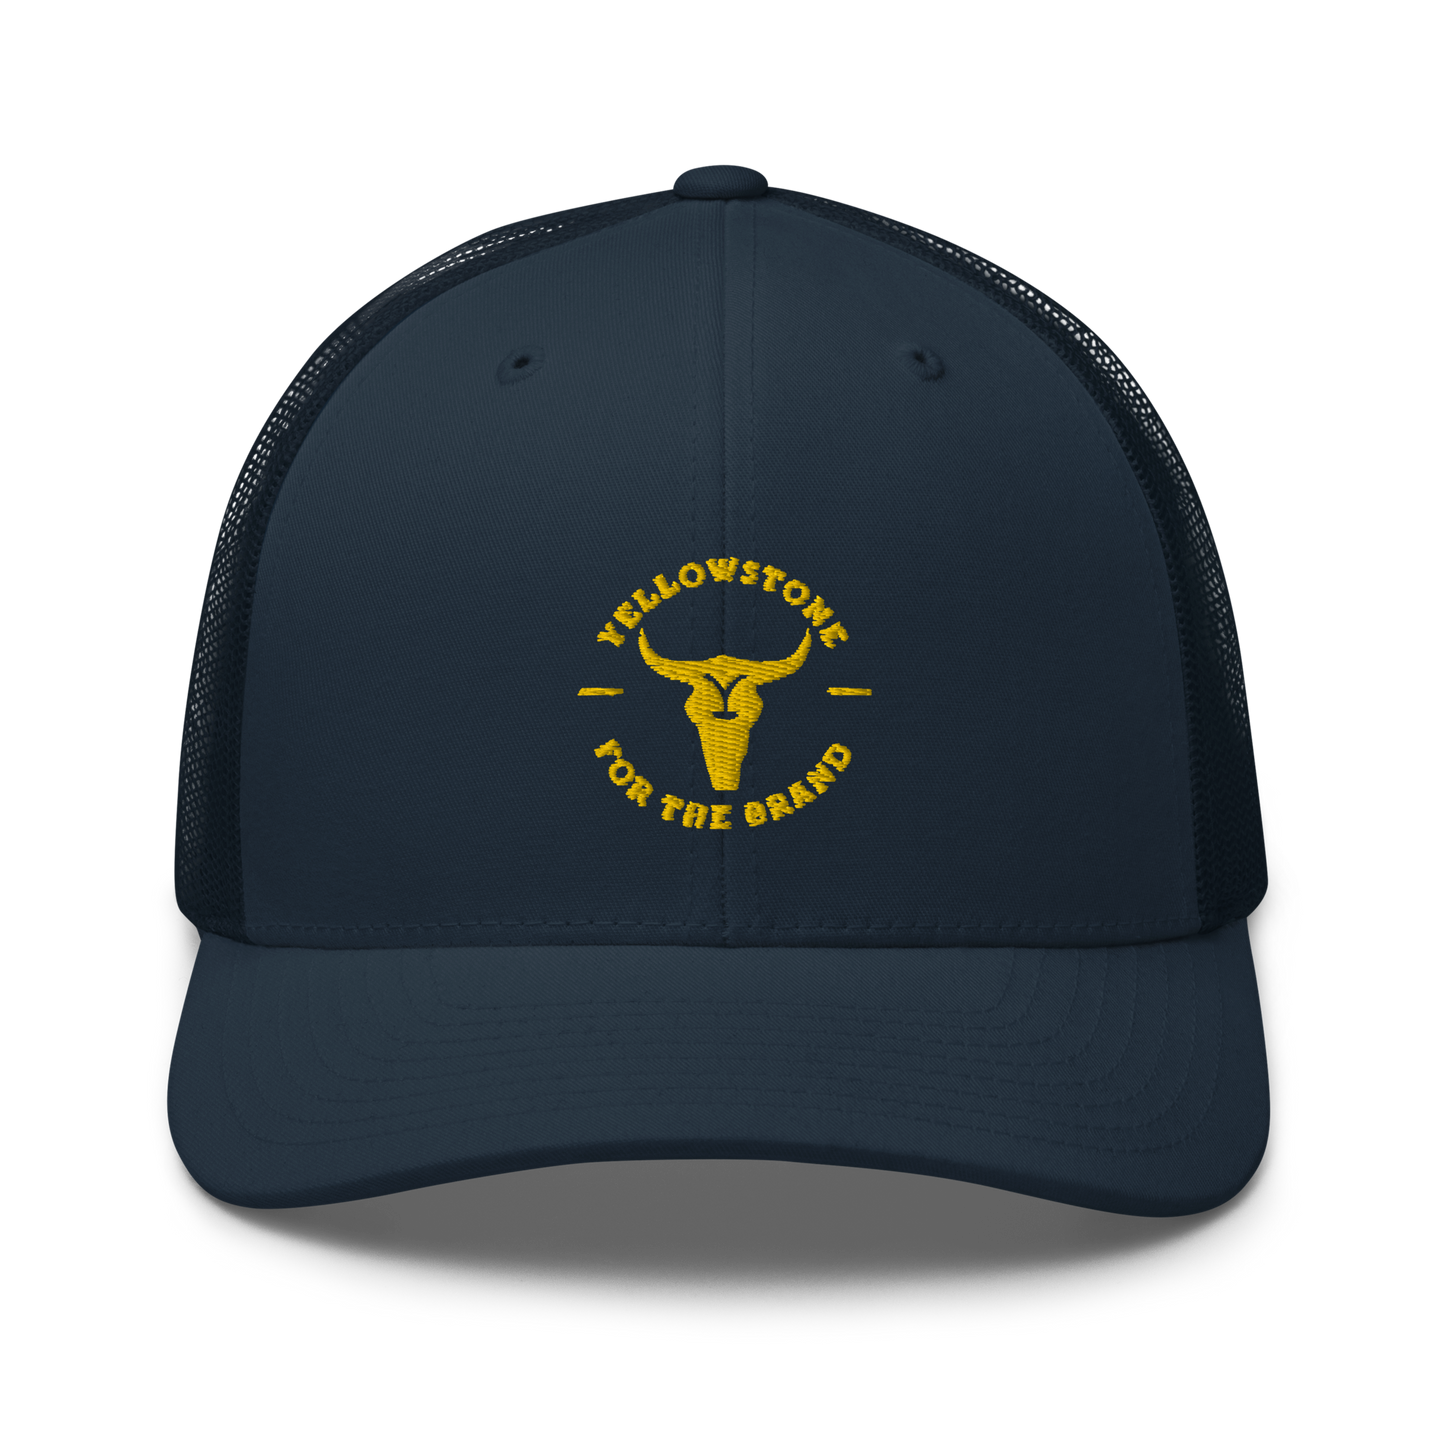 Yellowstone Für die Marke Trucker Hat